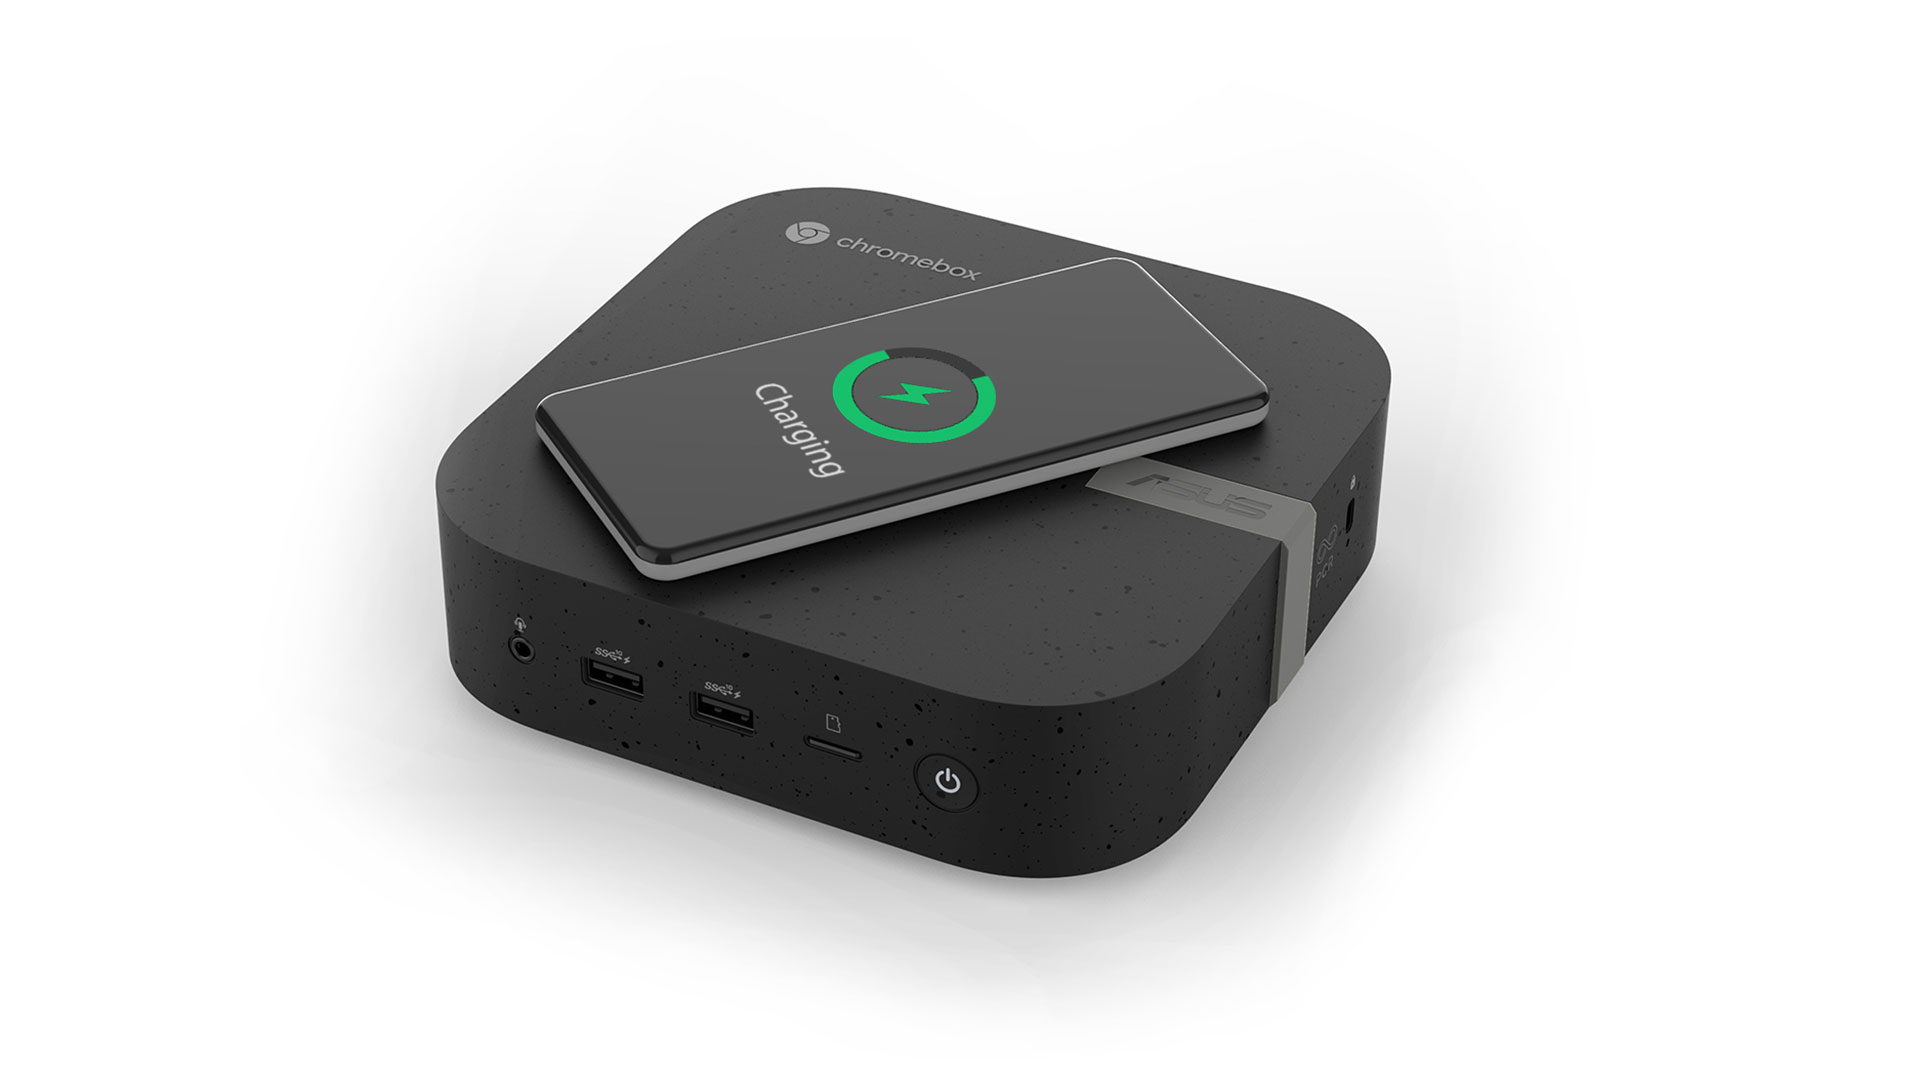 Asus Chromebox 5為首款可選配內建15瓦無線充電器的chromebox，使用者無需透過纜線即可為相容的智慧型手機、無線耳機等行動裝置充電。